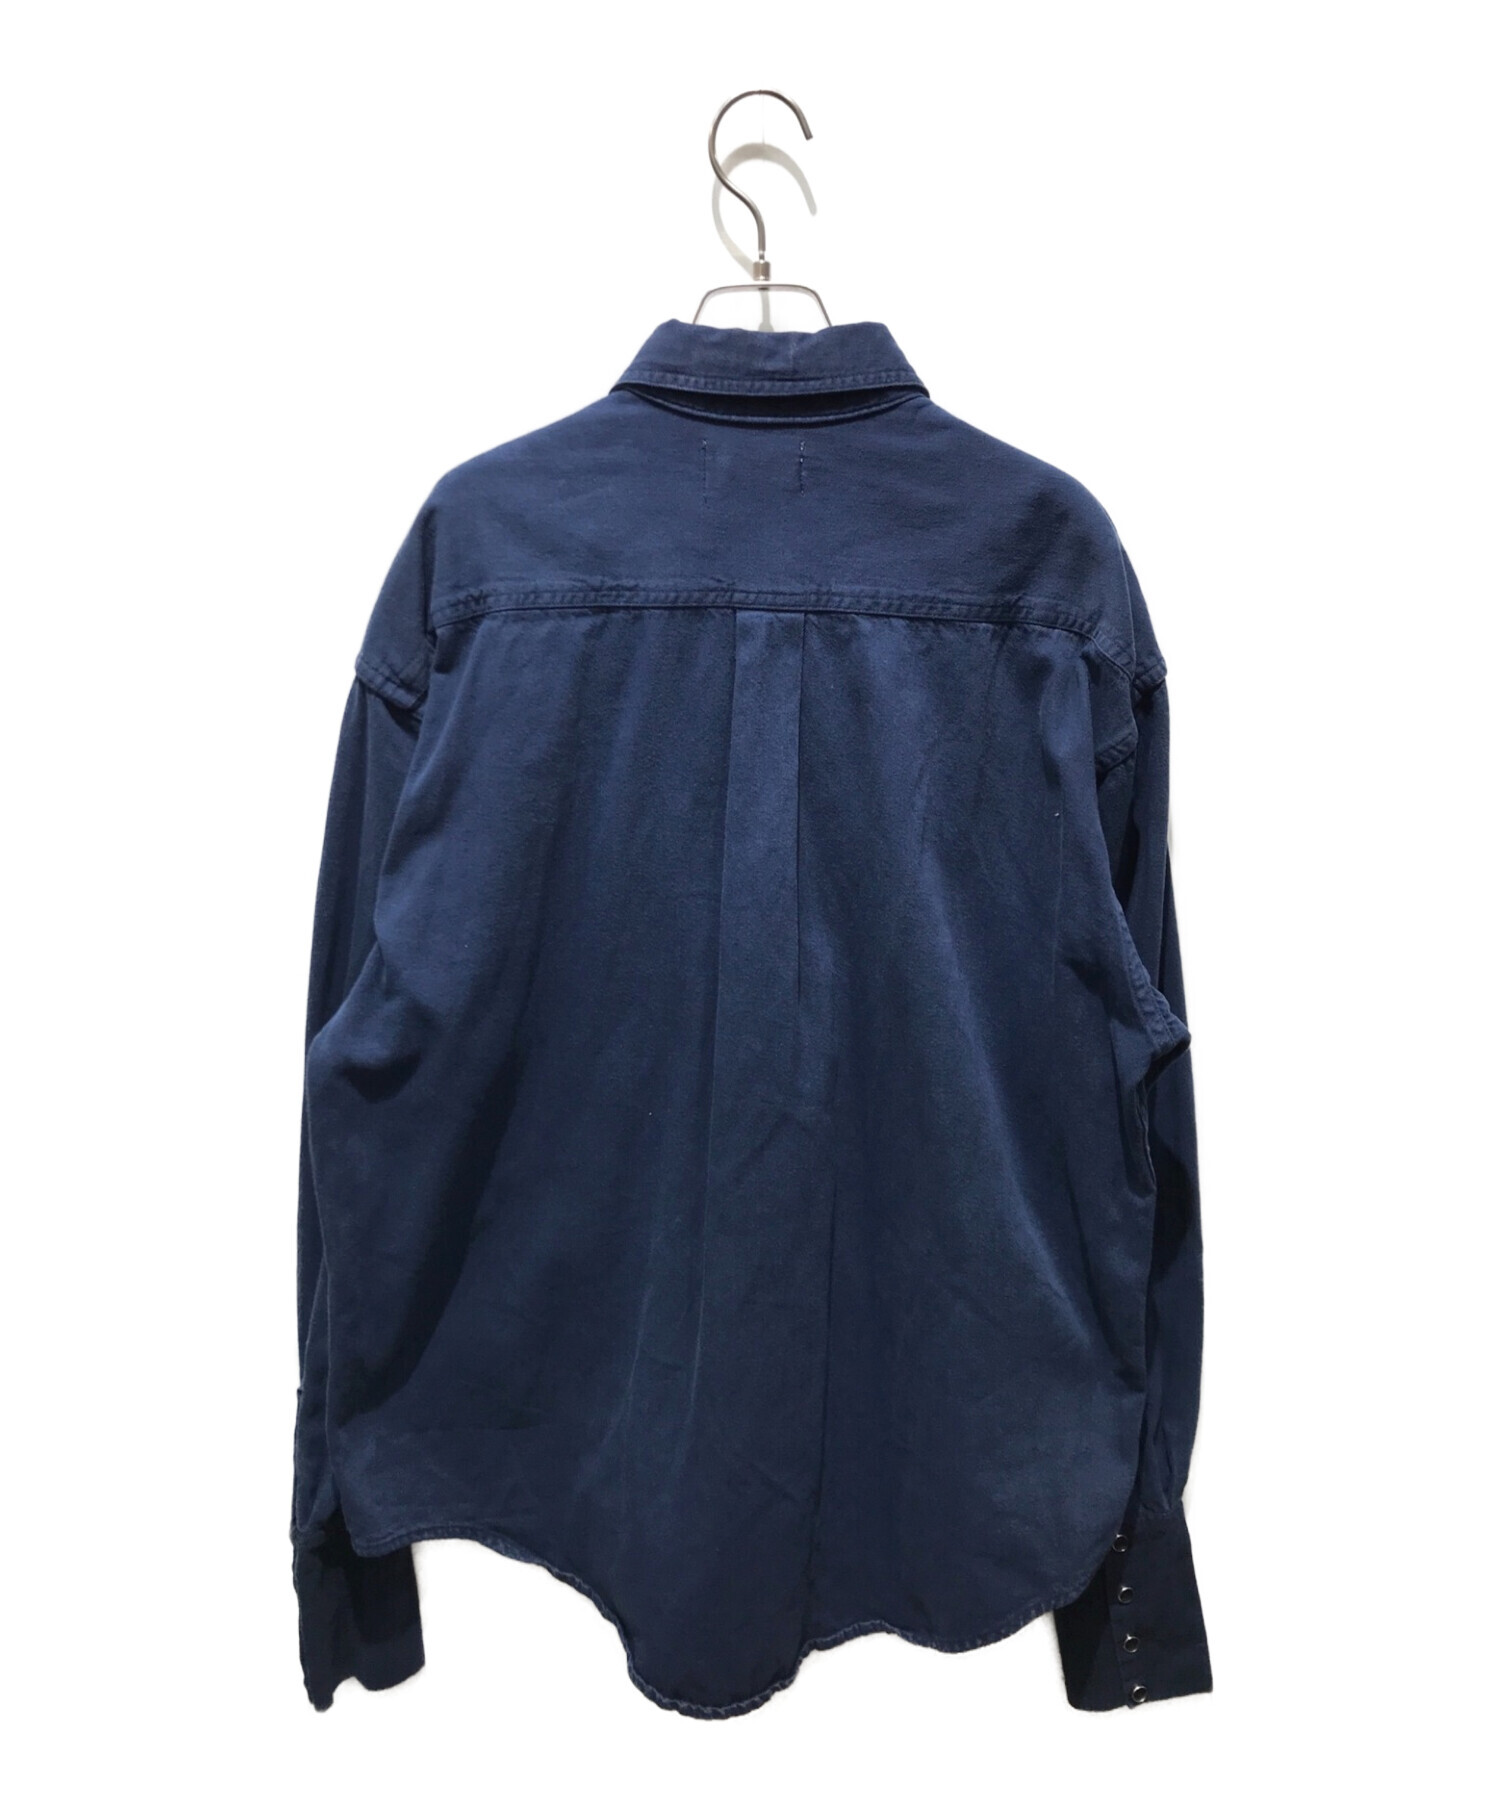 77circa (ナナナナサーカ) リメイクシャツ ブルー サイズ:記載無しの為実寸参照